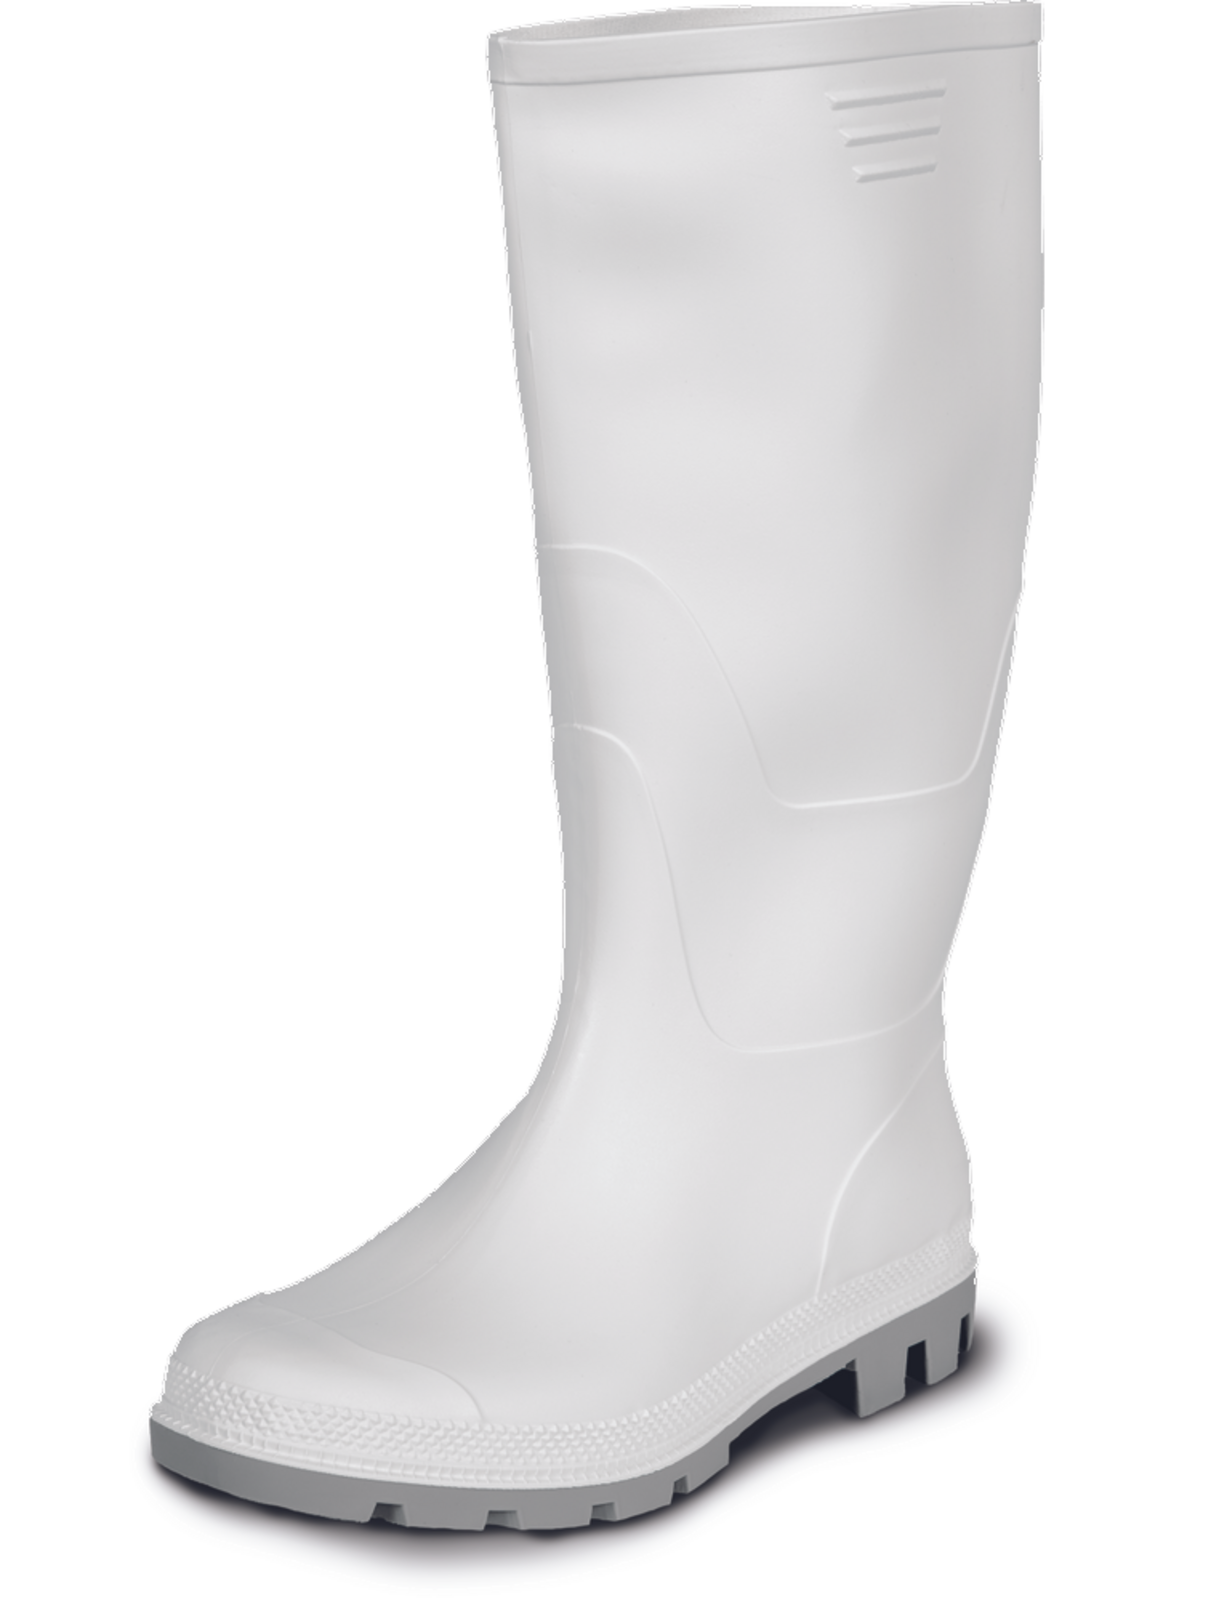 Gumáky Boots Ginocchio PVC - veľkosť: 42, farba: biela